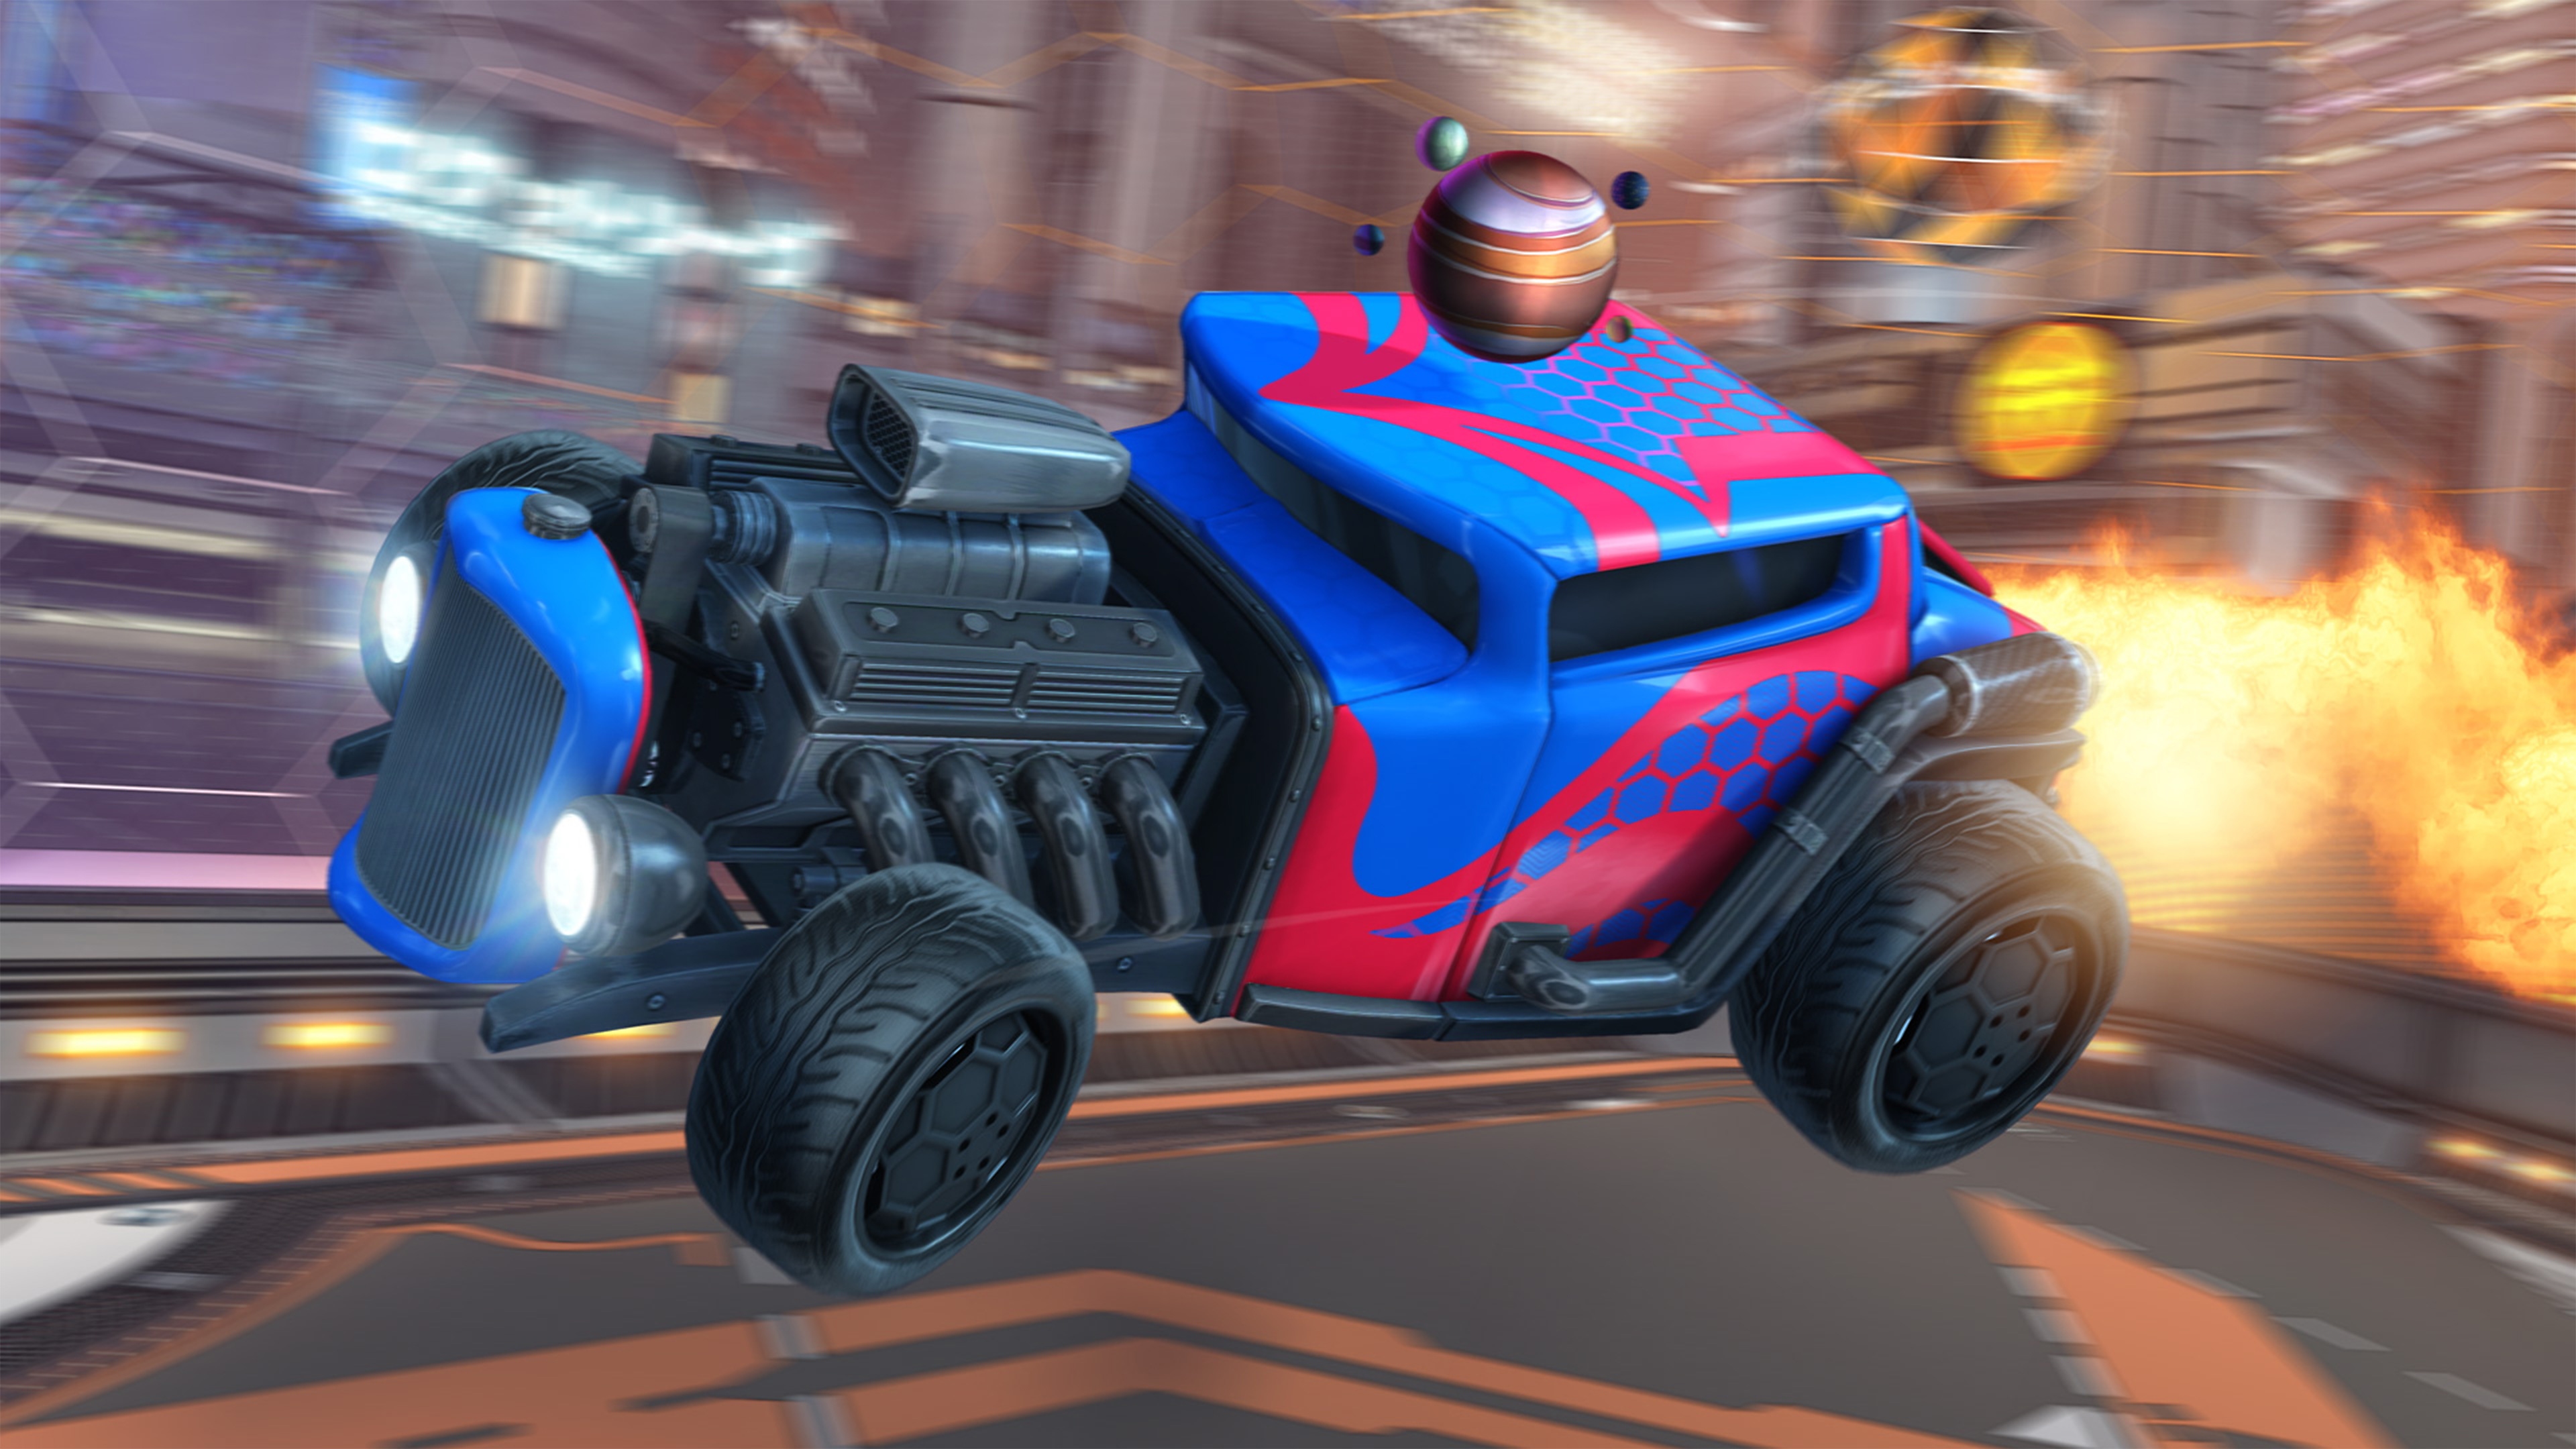 Rocket League-skærmbillede, der viser en hot rod-agtig bil med synlig motor og røg og blå lakering